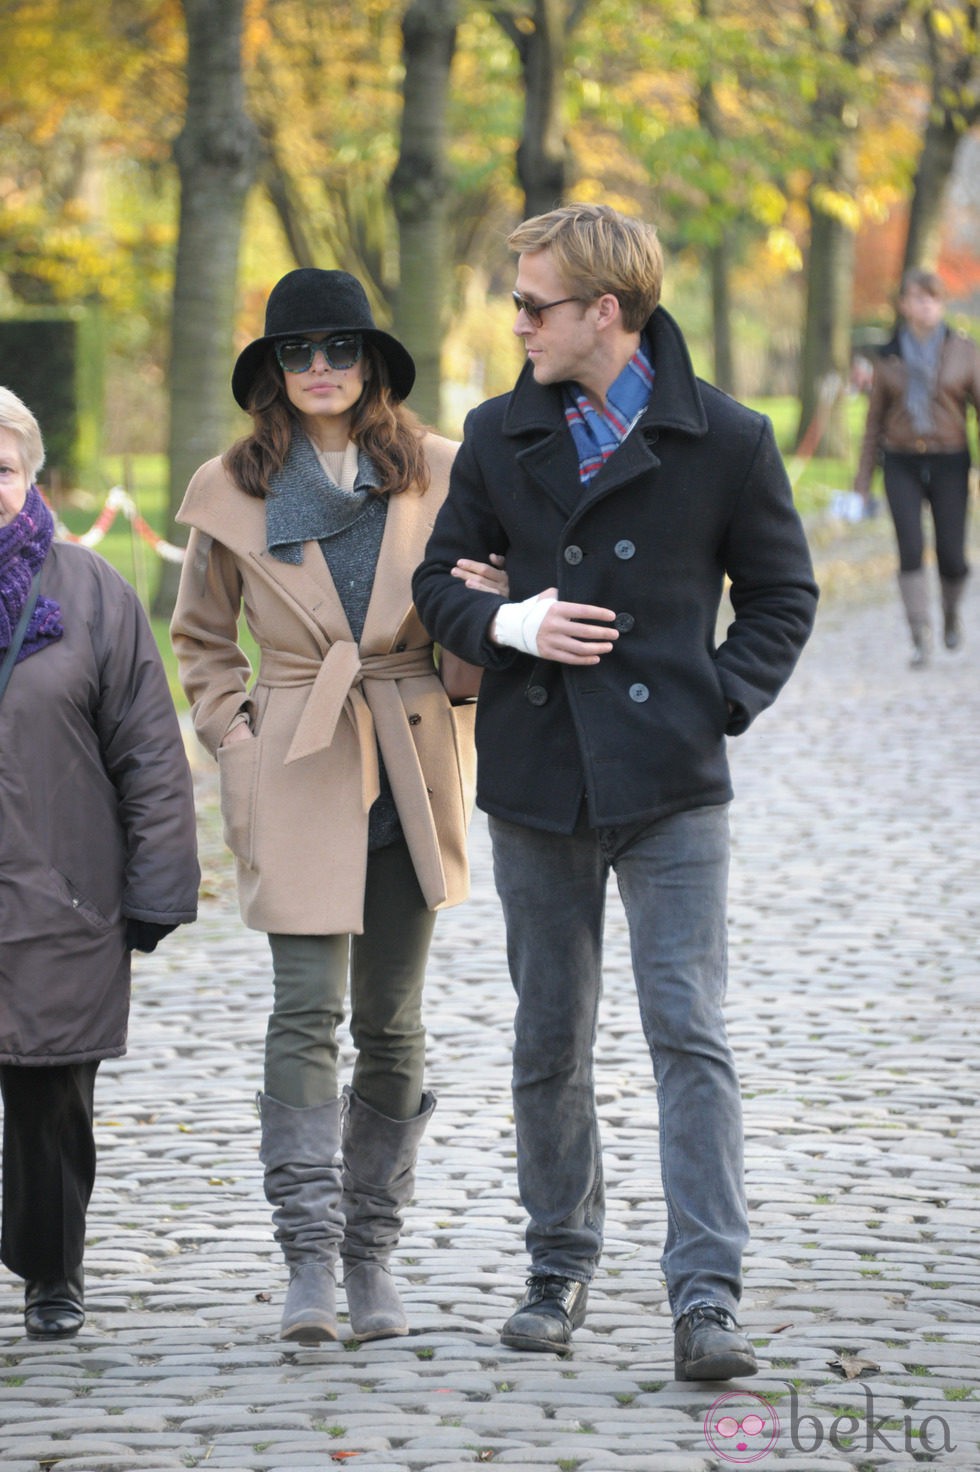 Ryan Gosling y su novia, Eva Mendes, pasean su amor durante sus románticas vacaciones en París